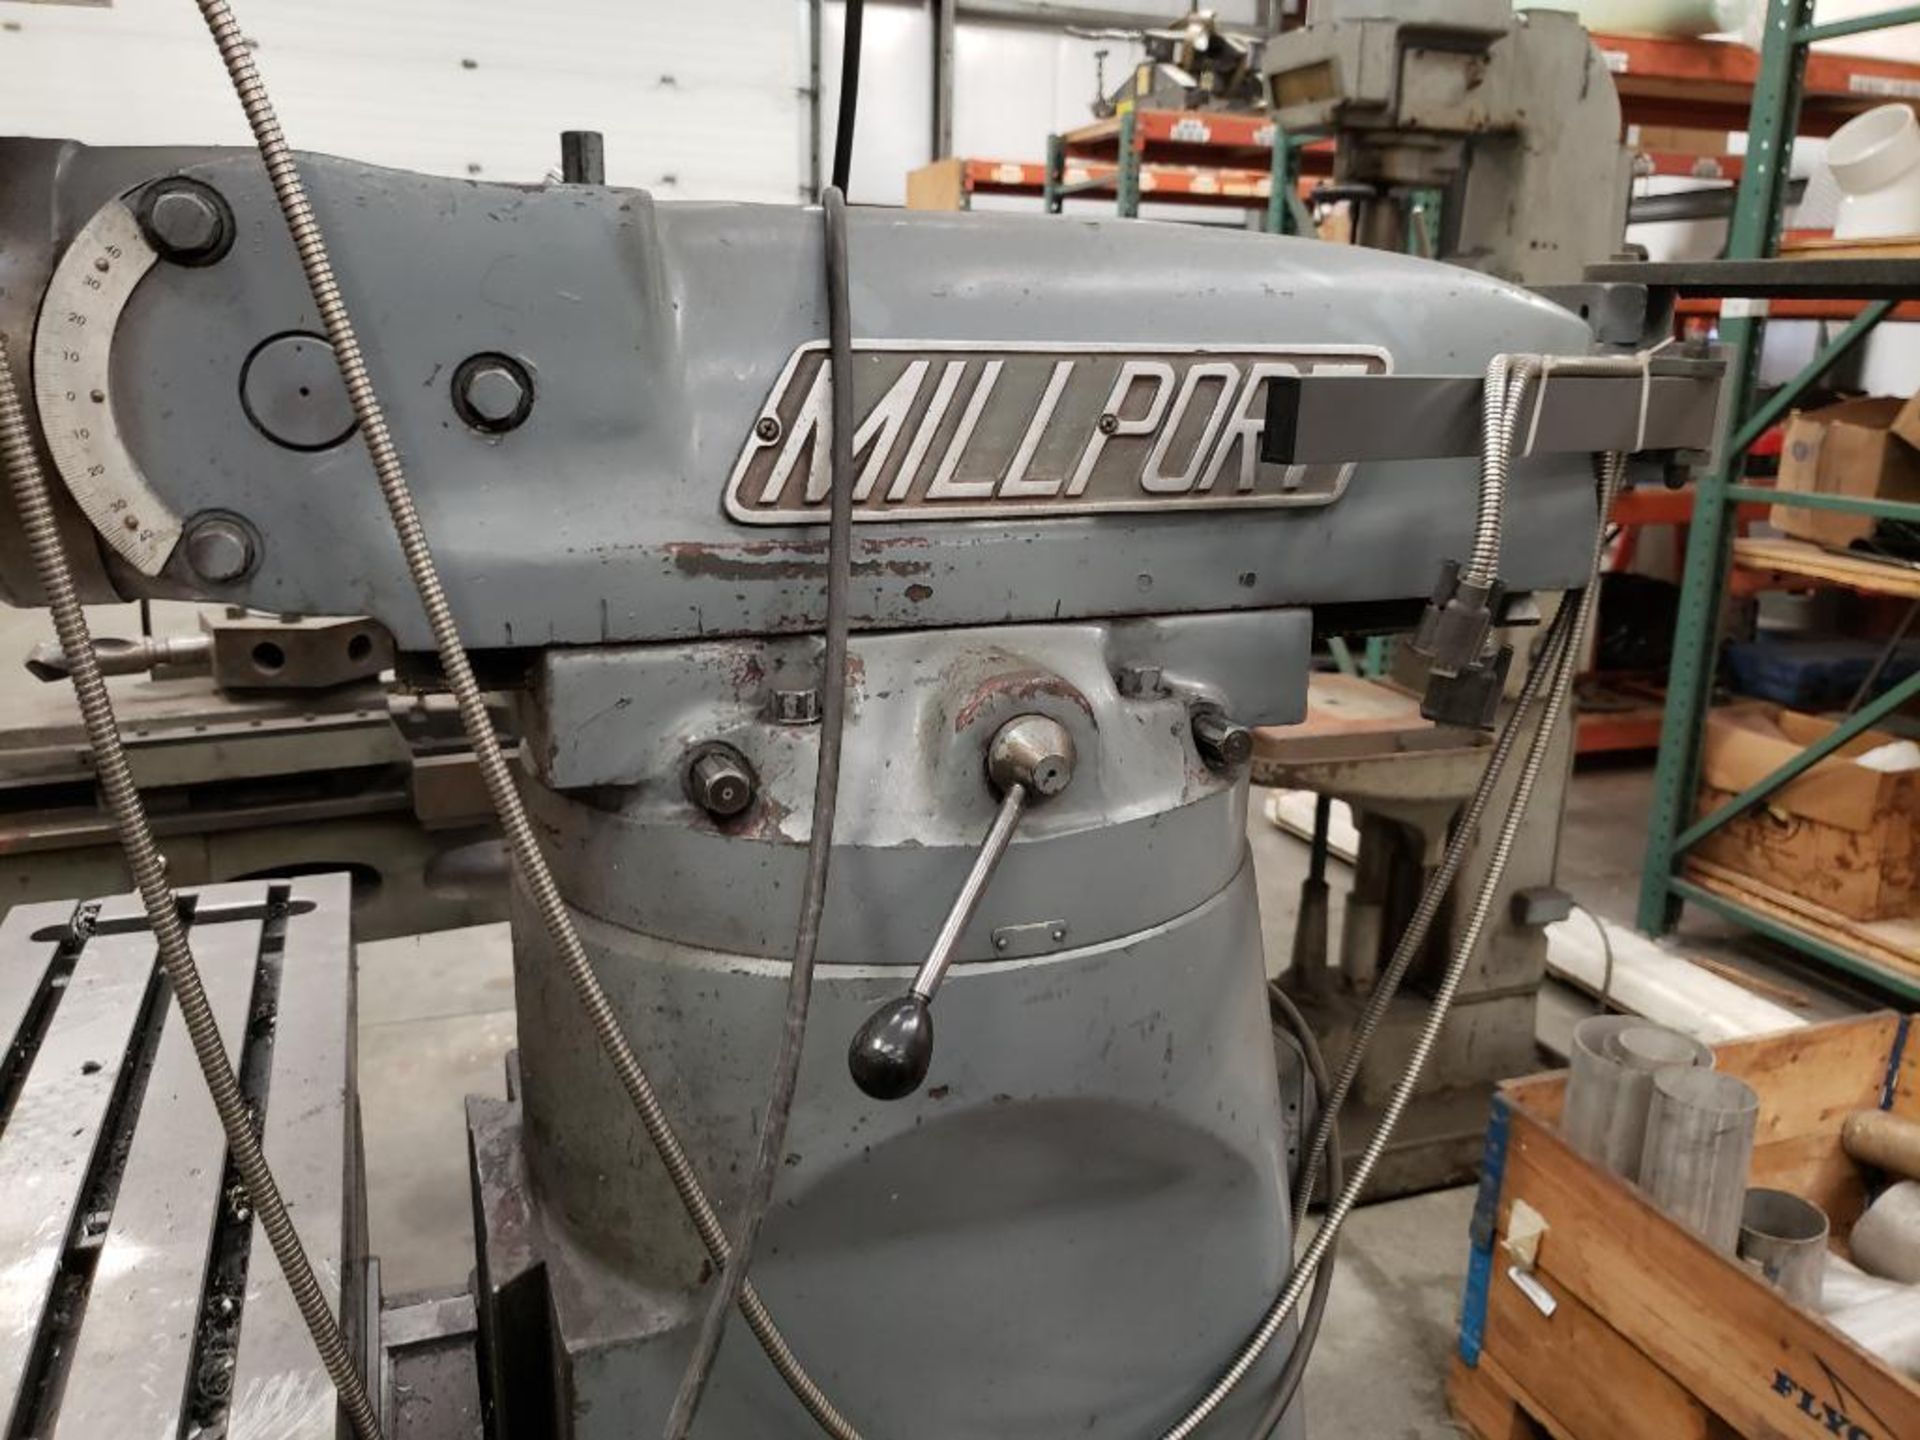 Millport knee mill. Model 3V. Serial number 820548H. - Image 6 of 21